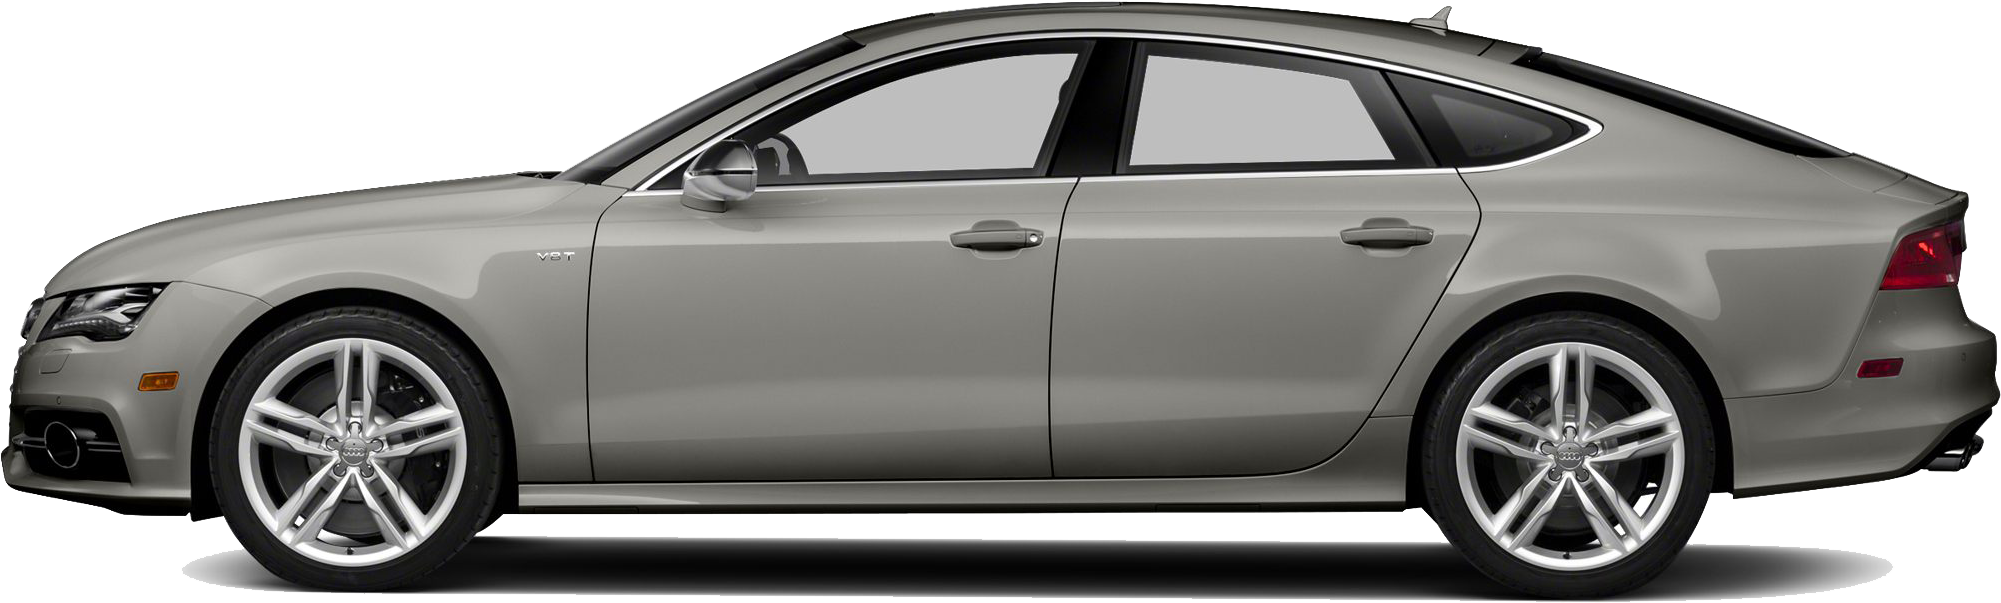 Audi Luxury Sedan Side View PNG image